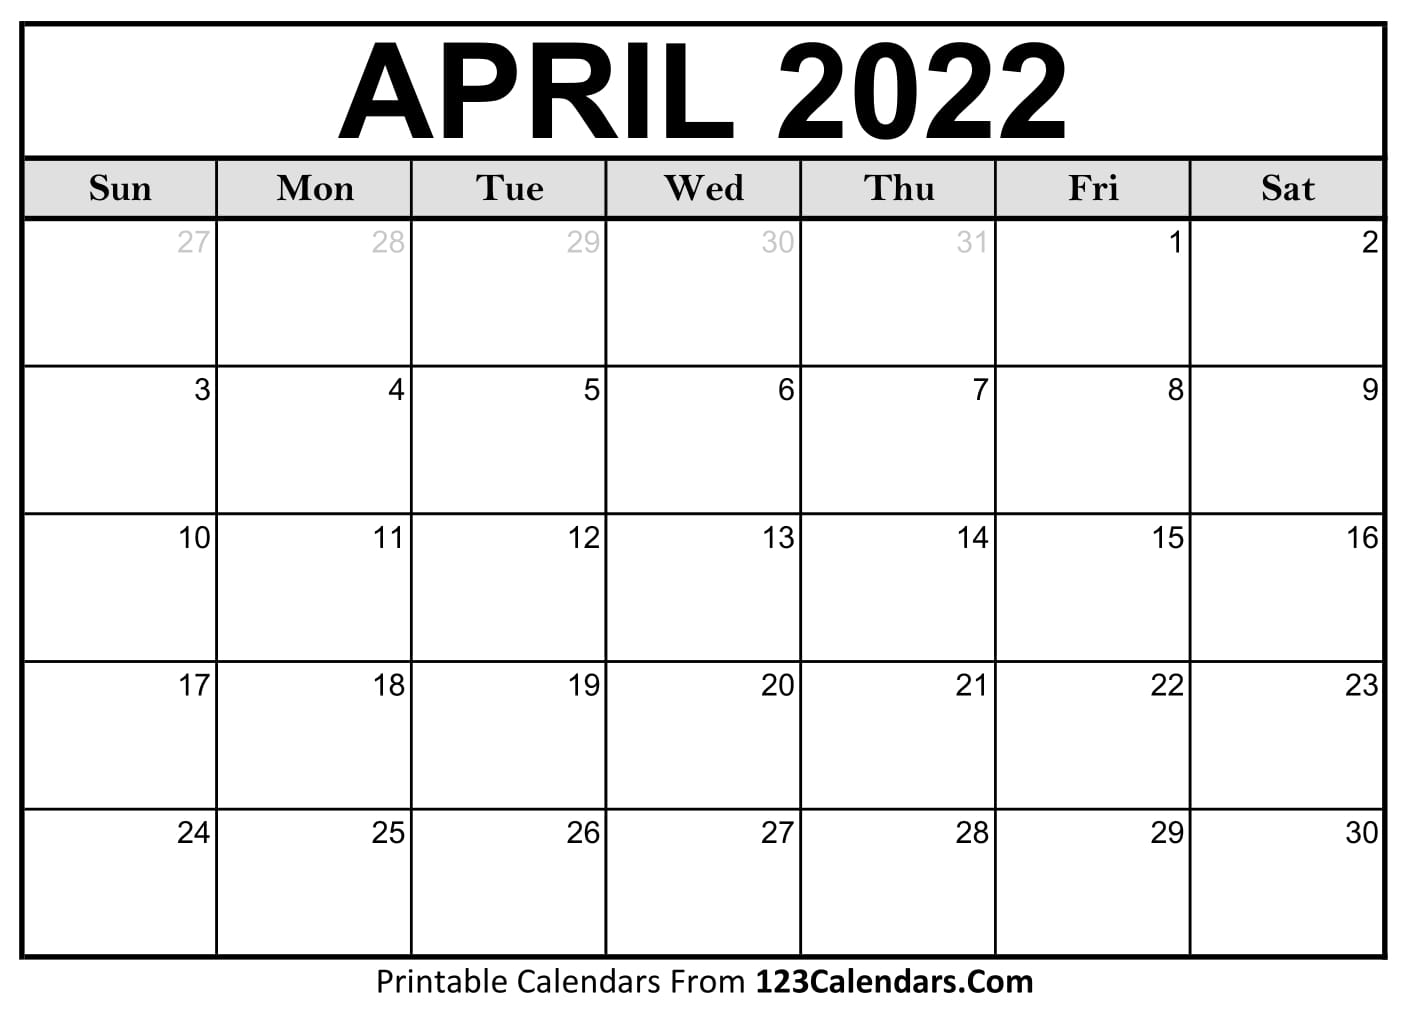 Print April 2022 Calendar 2022 Printable Calendar | 123Calendars.com